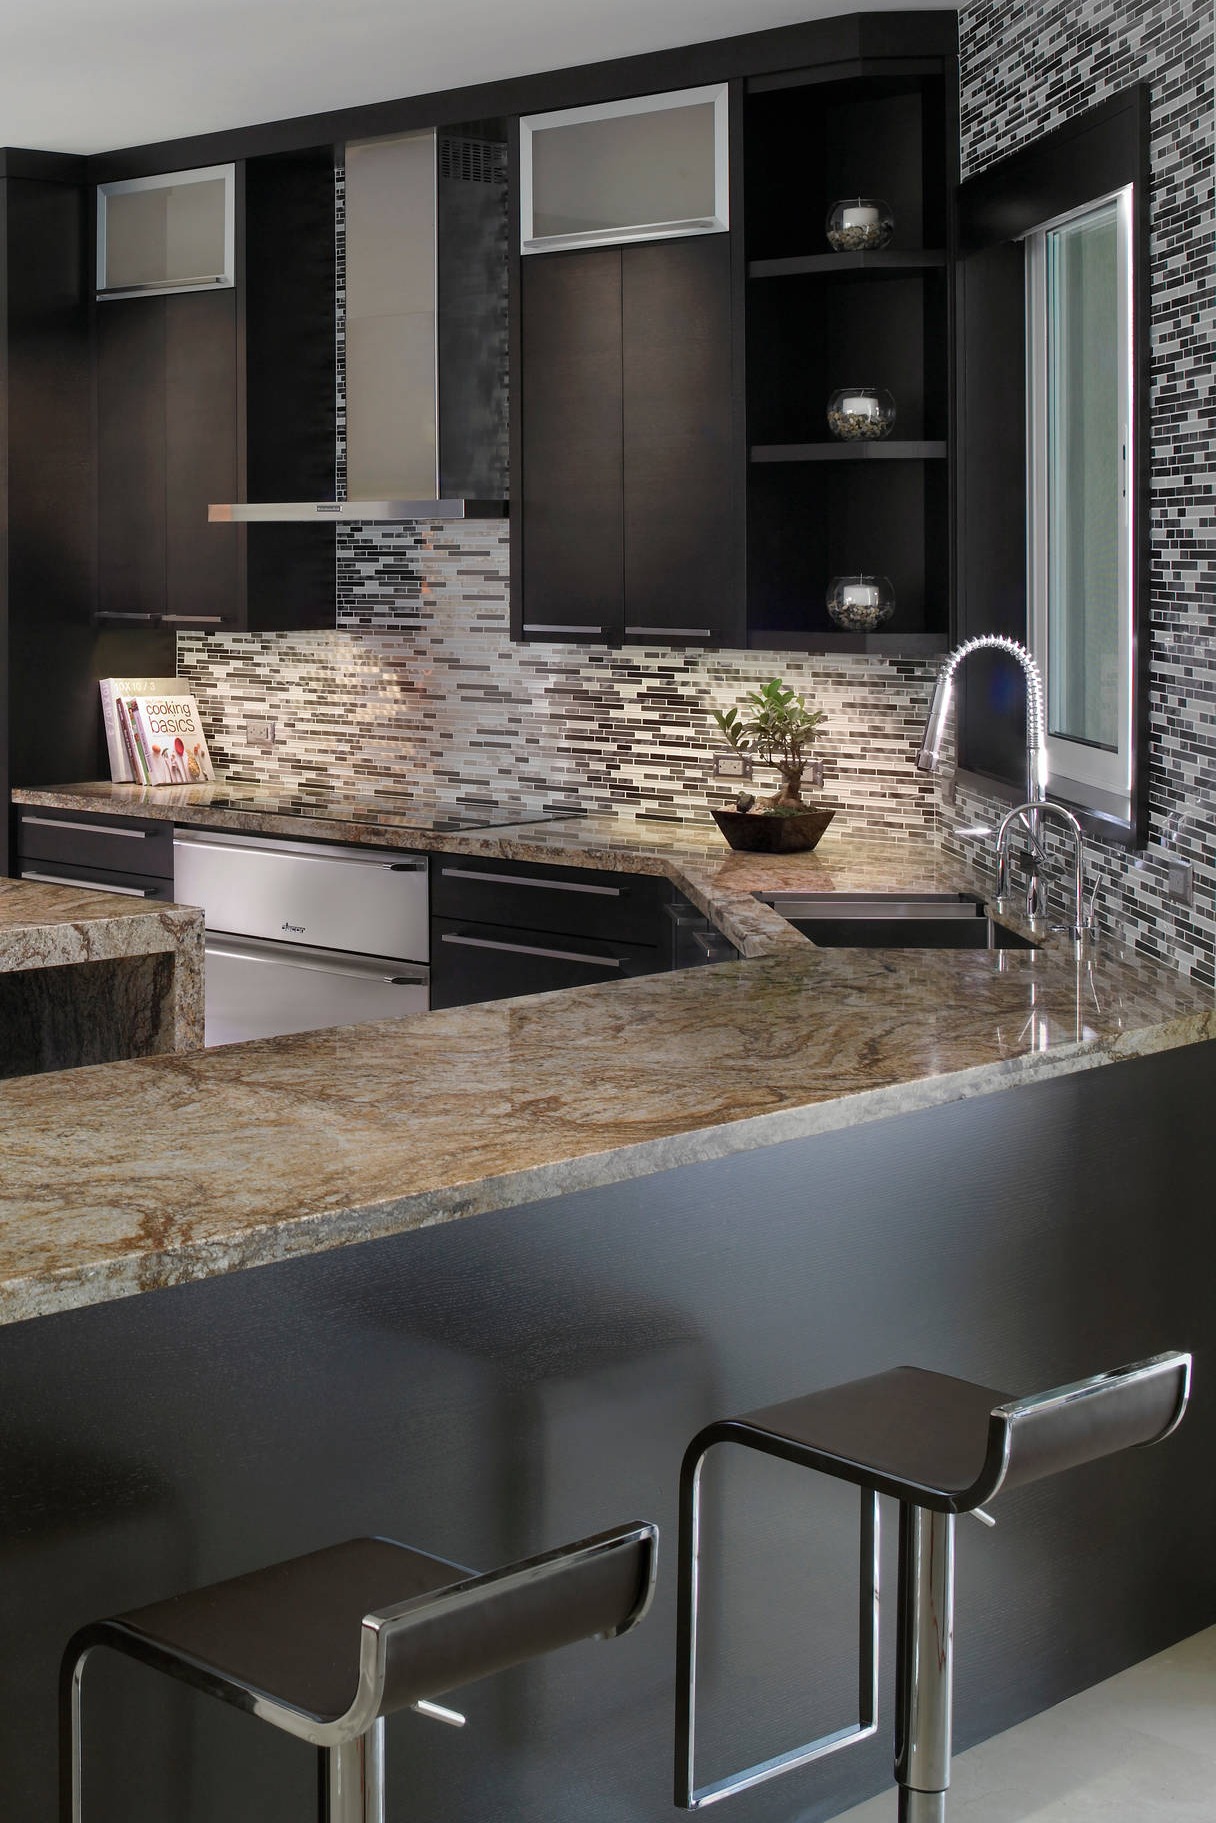 Tiberius Gold Granite Countertops Dark Cabinet Mosaic Tile Backsplash Gray Floor